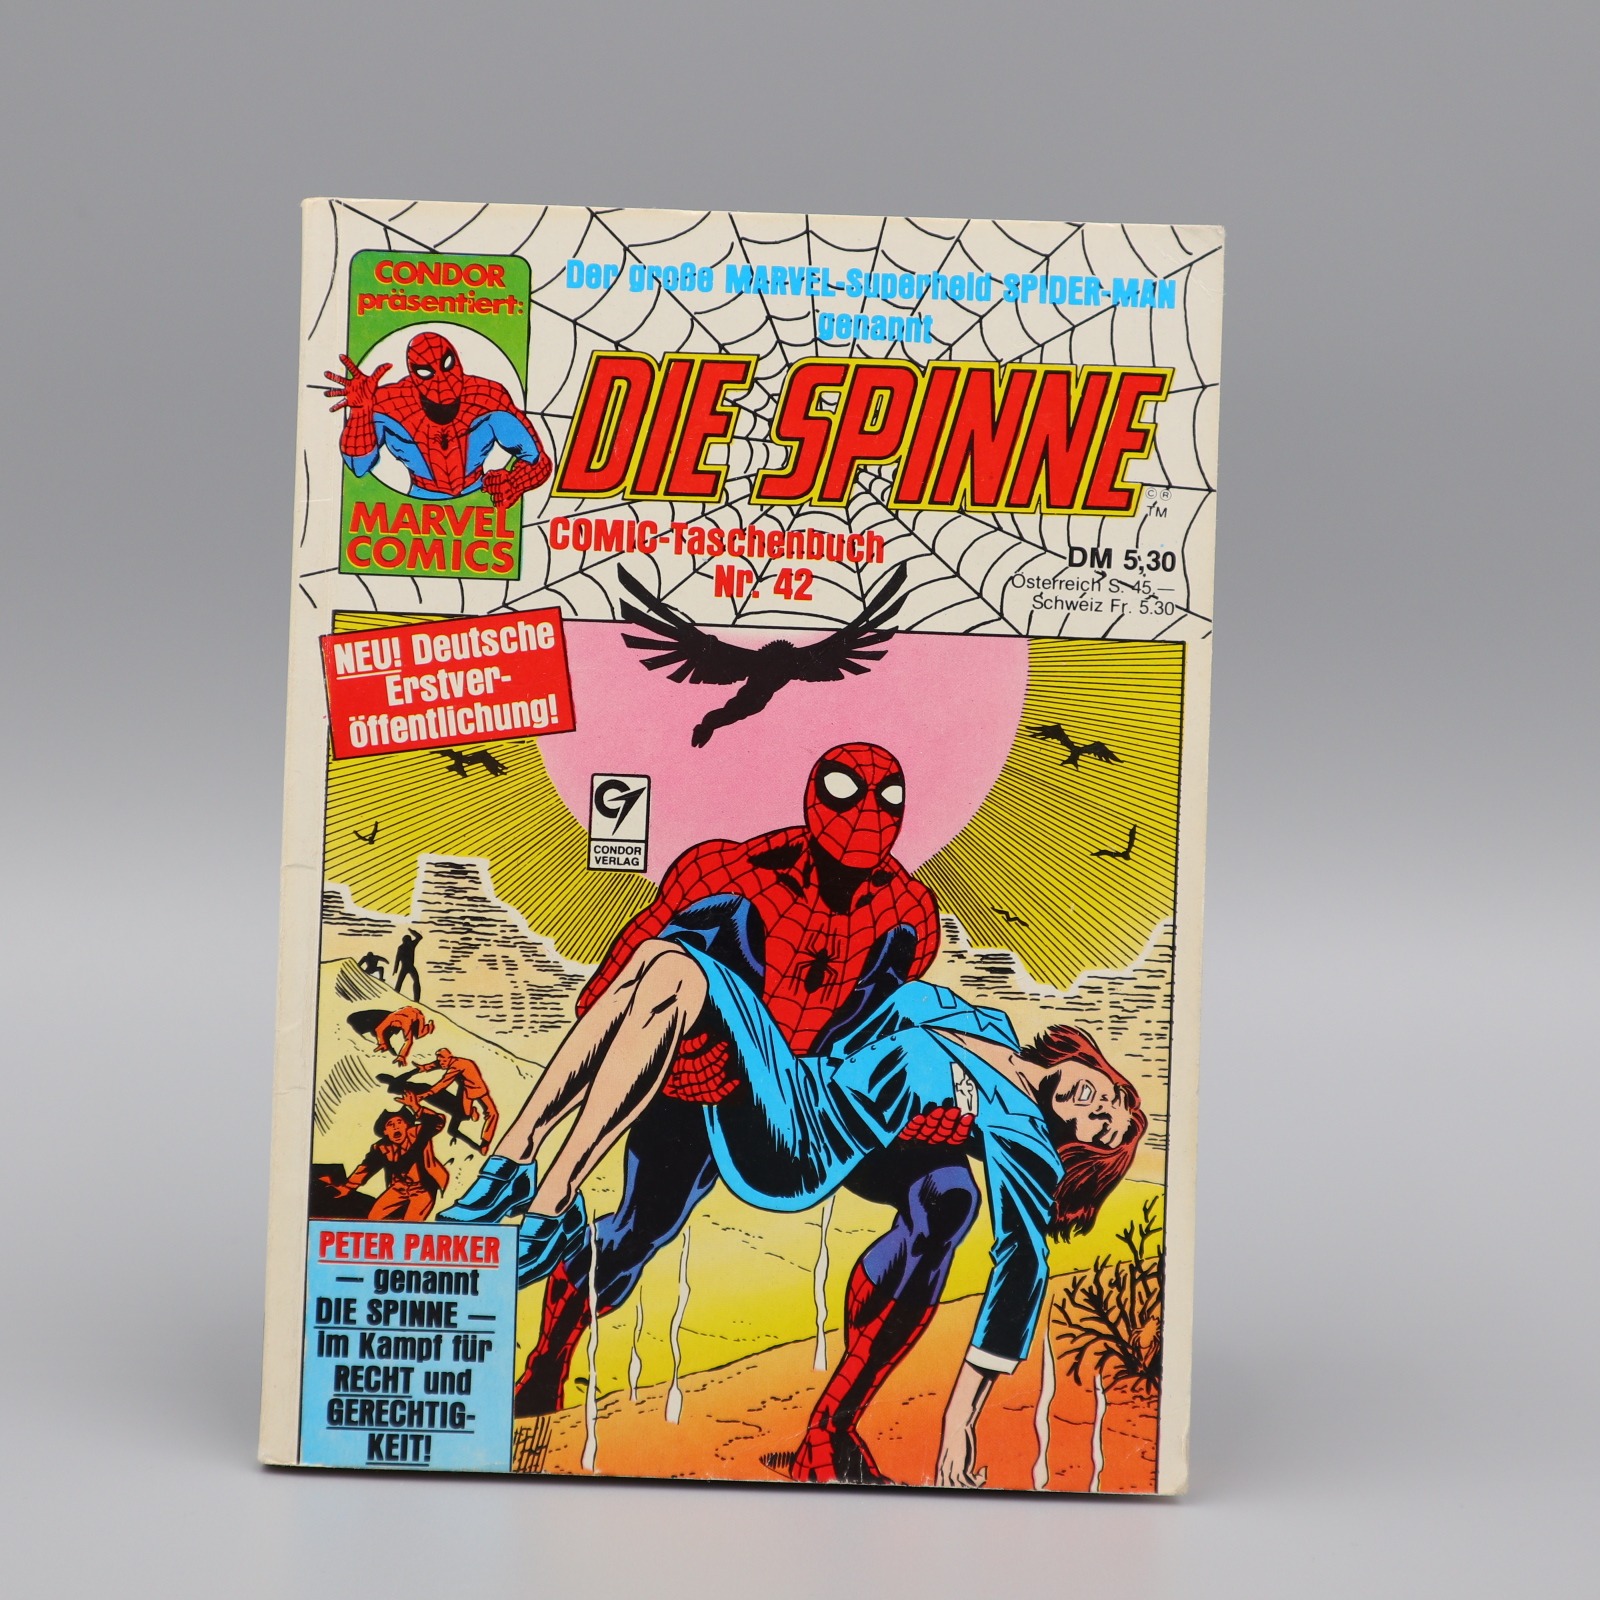 Die Spinne Comic-Taschenbuch Nr Zustand 1 42 Marvel Comics Condor Verlag